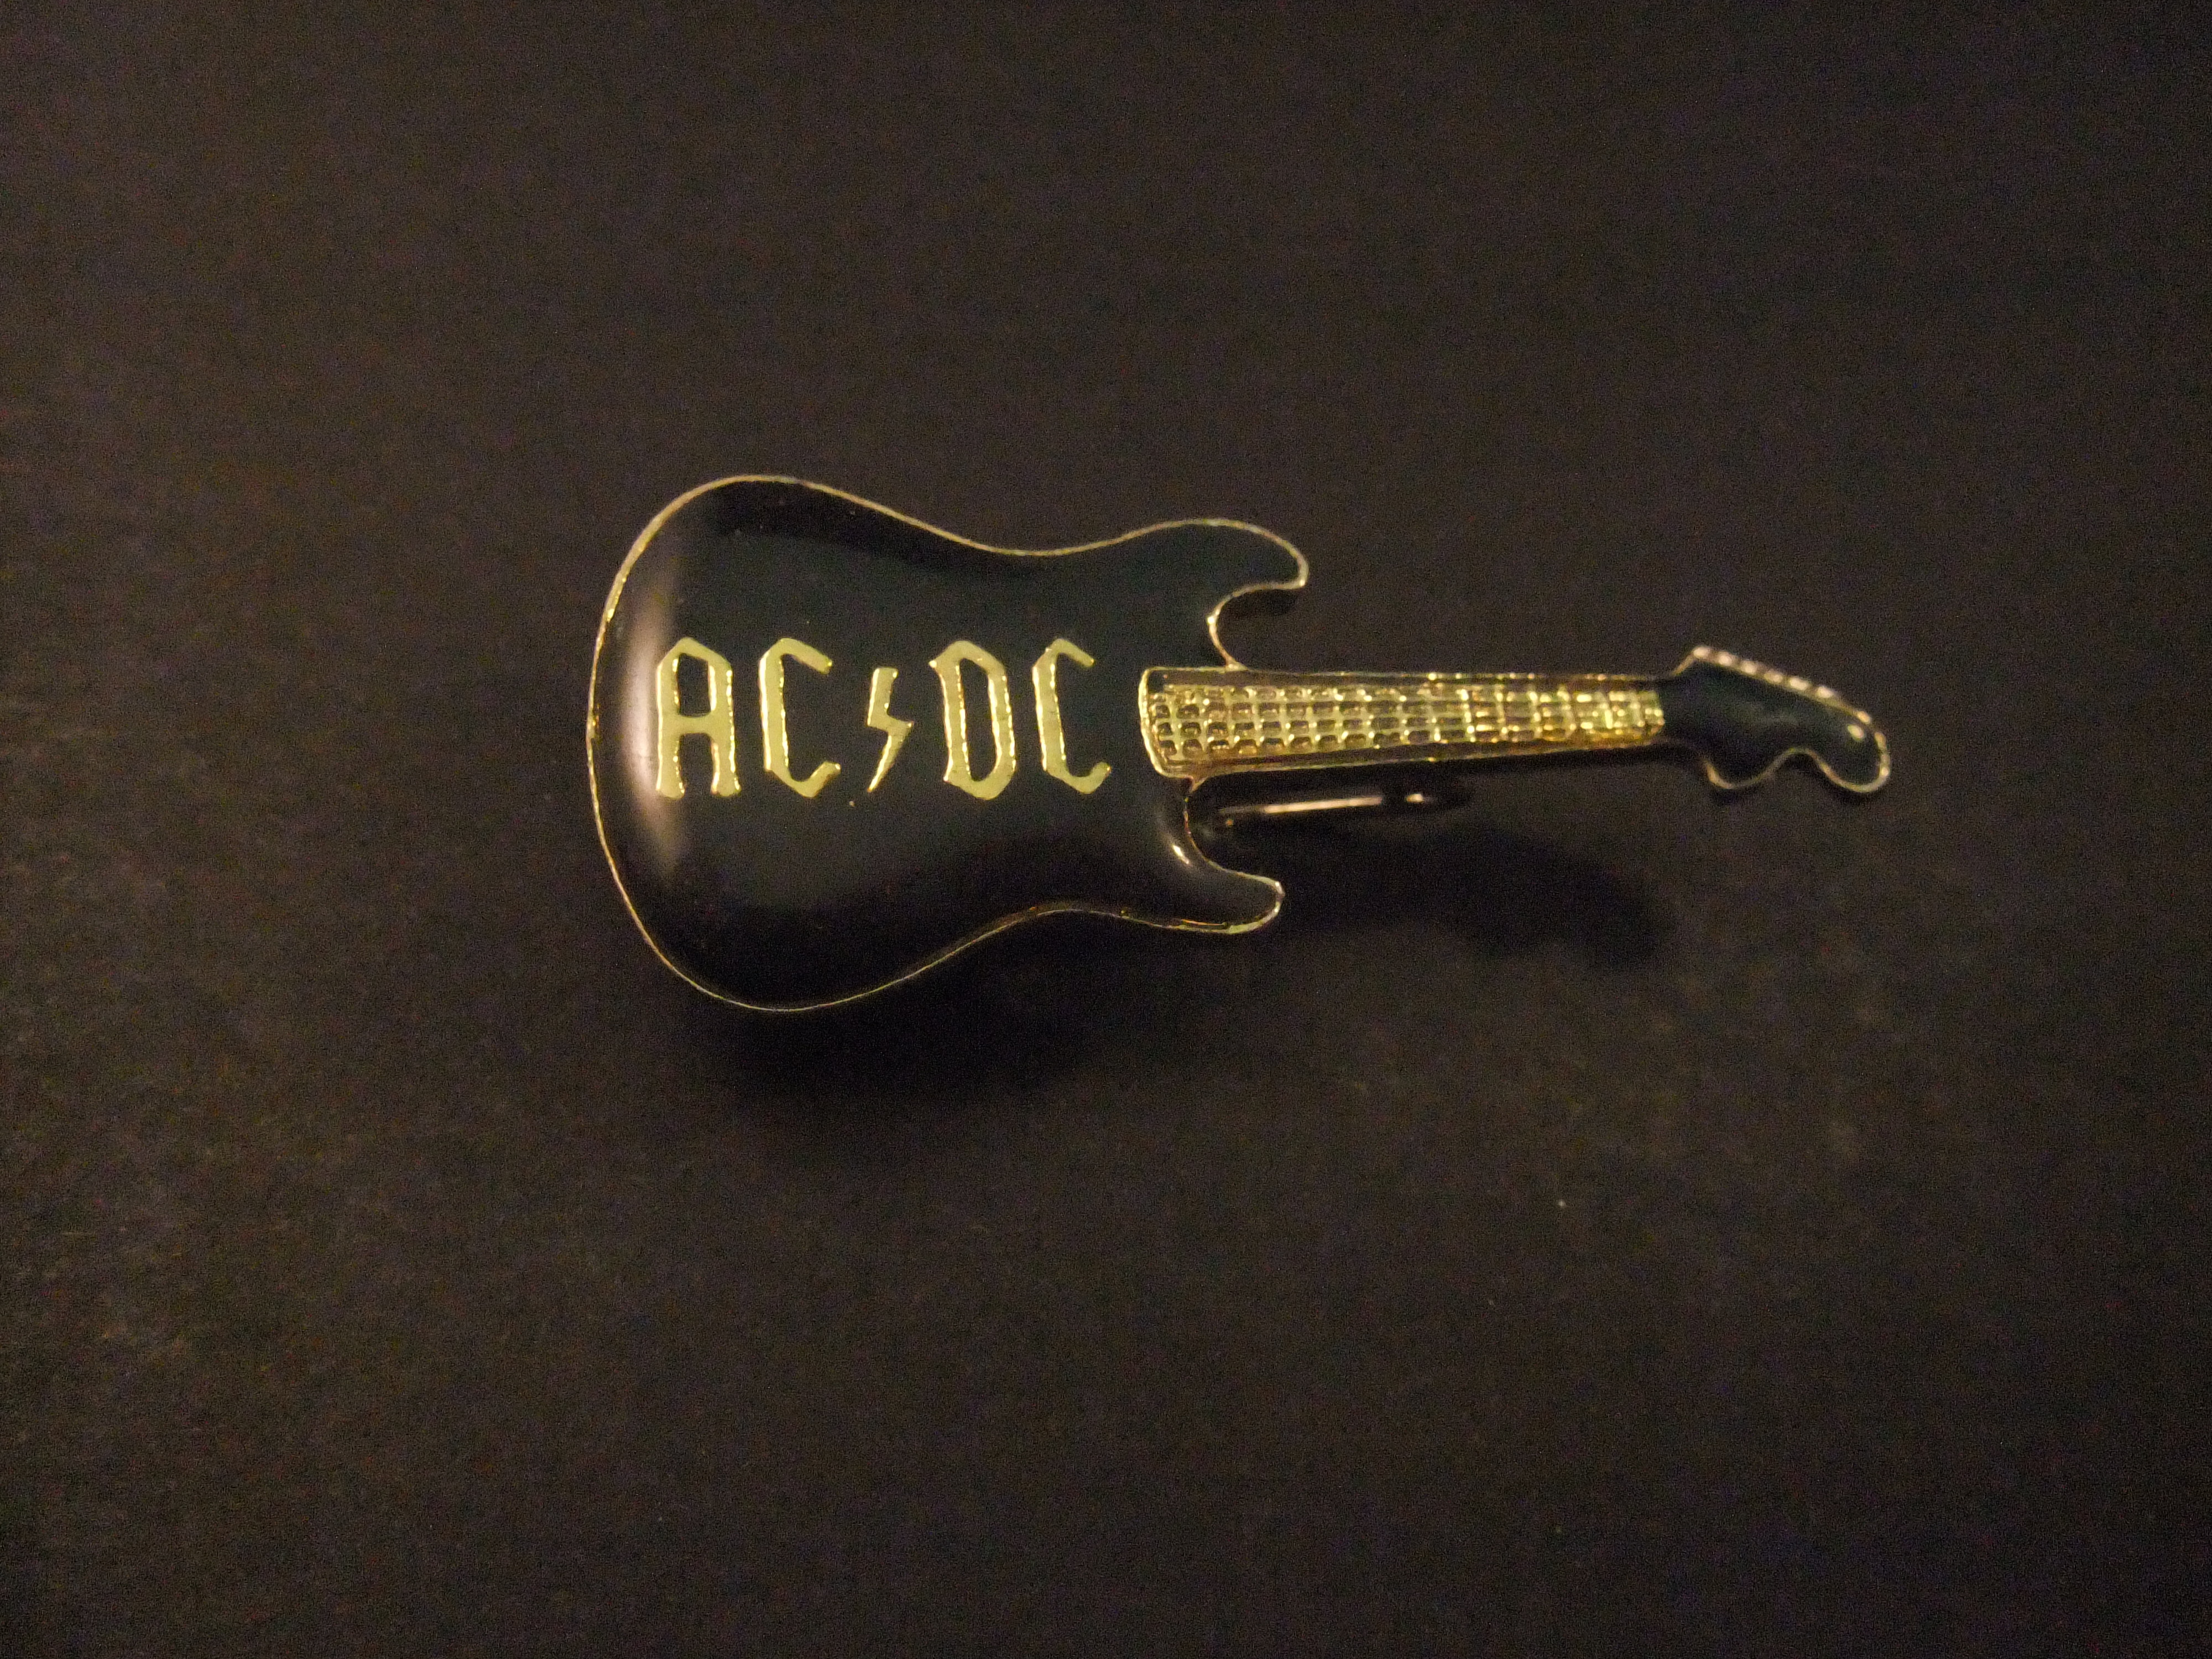 ACDC Australische hardrockband gitaar met logo